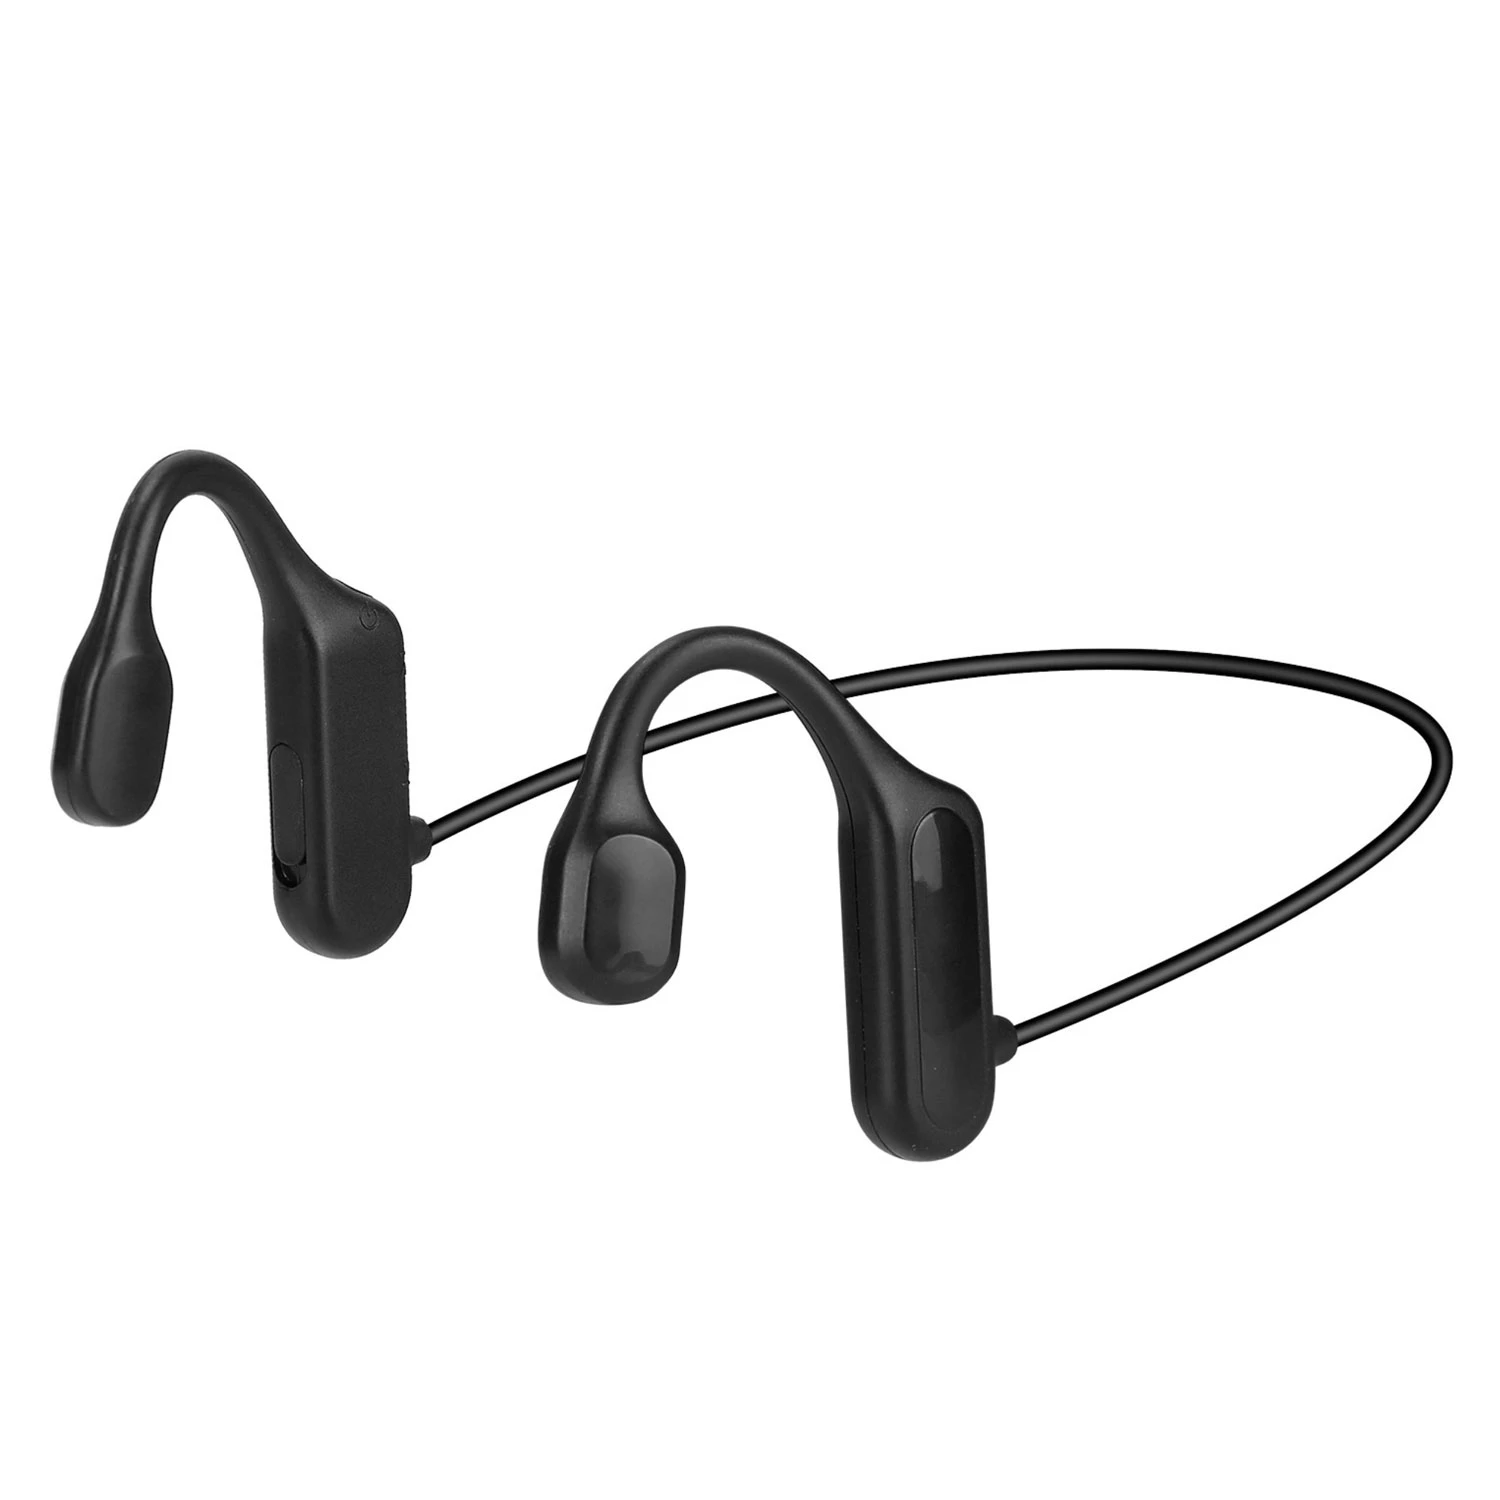 Wireless Bone Conduction Headphones - Open Ear Sports Headset w/ Mic